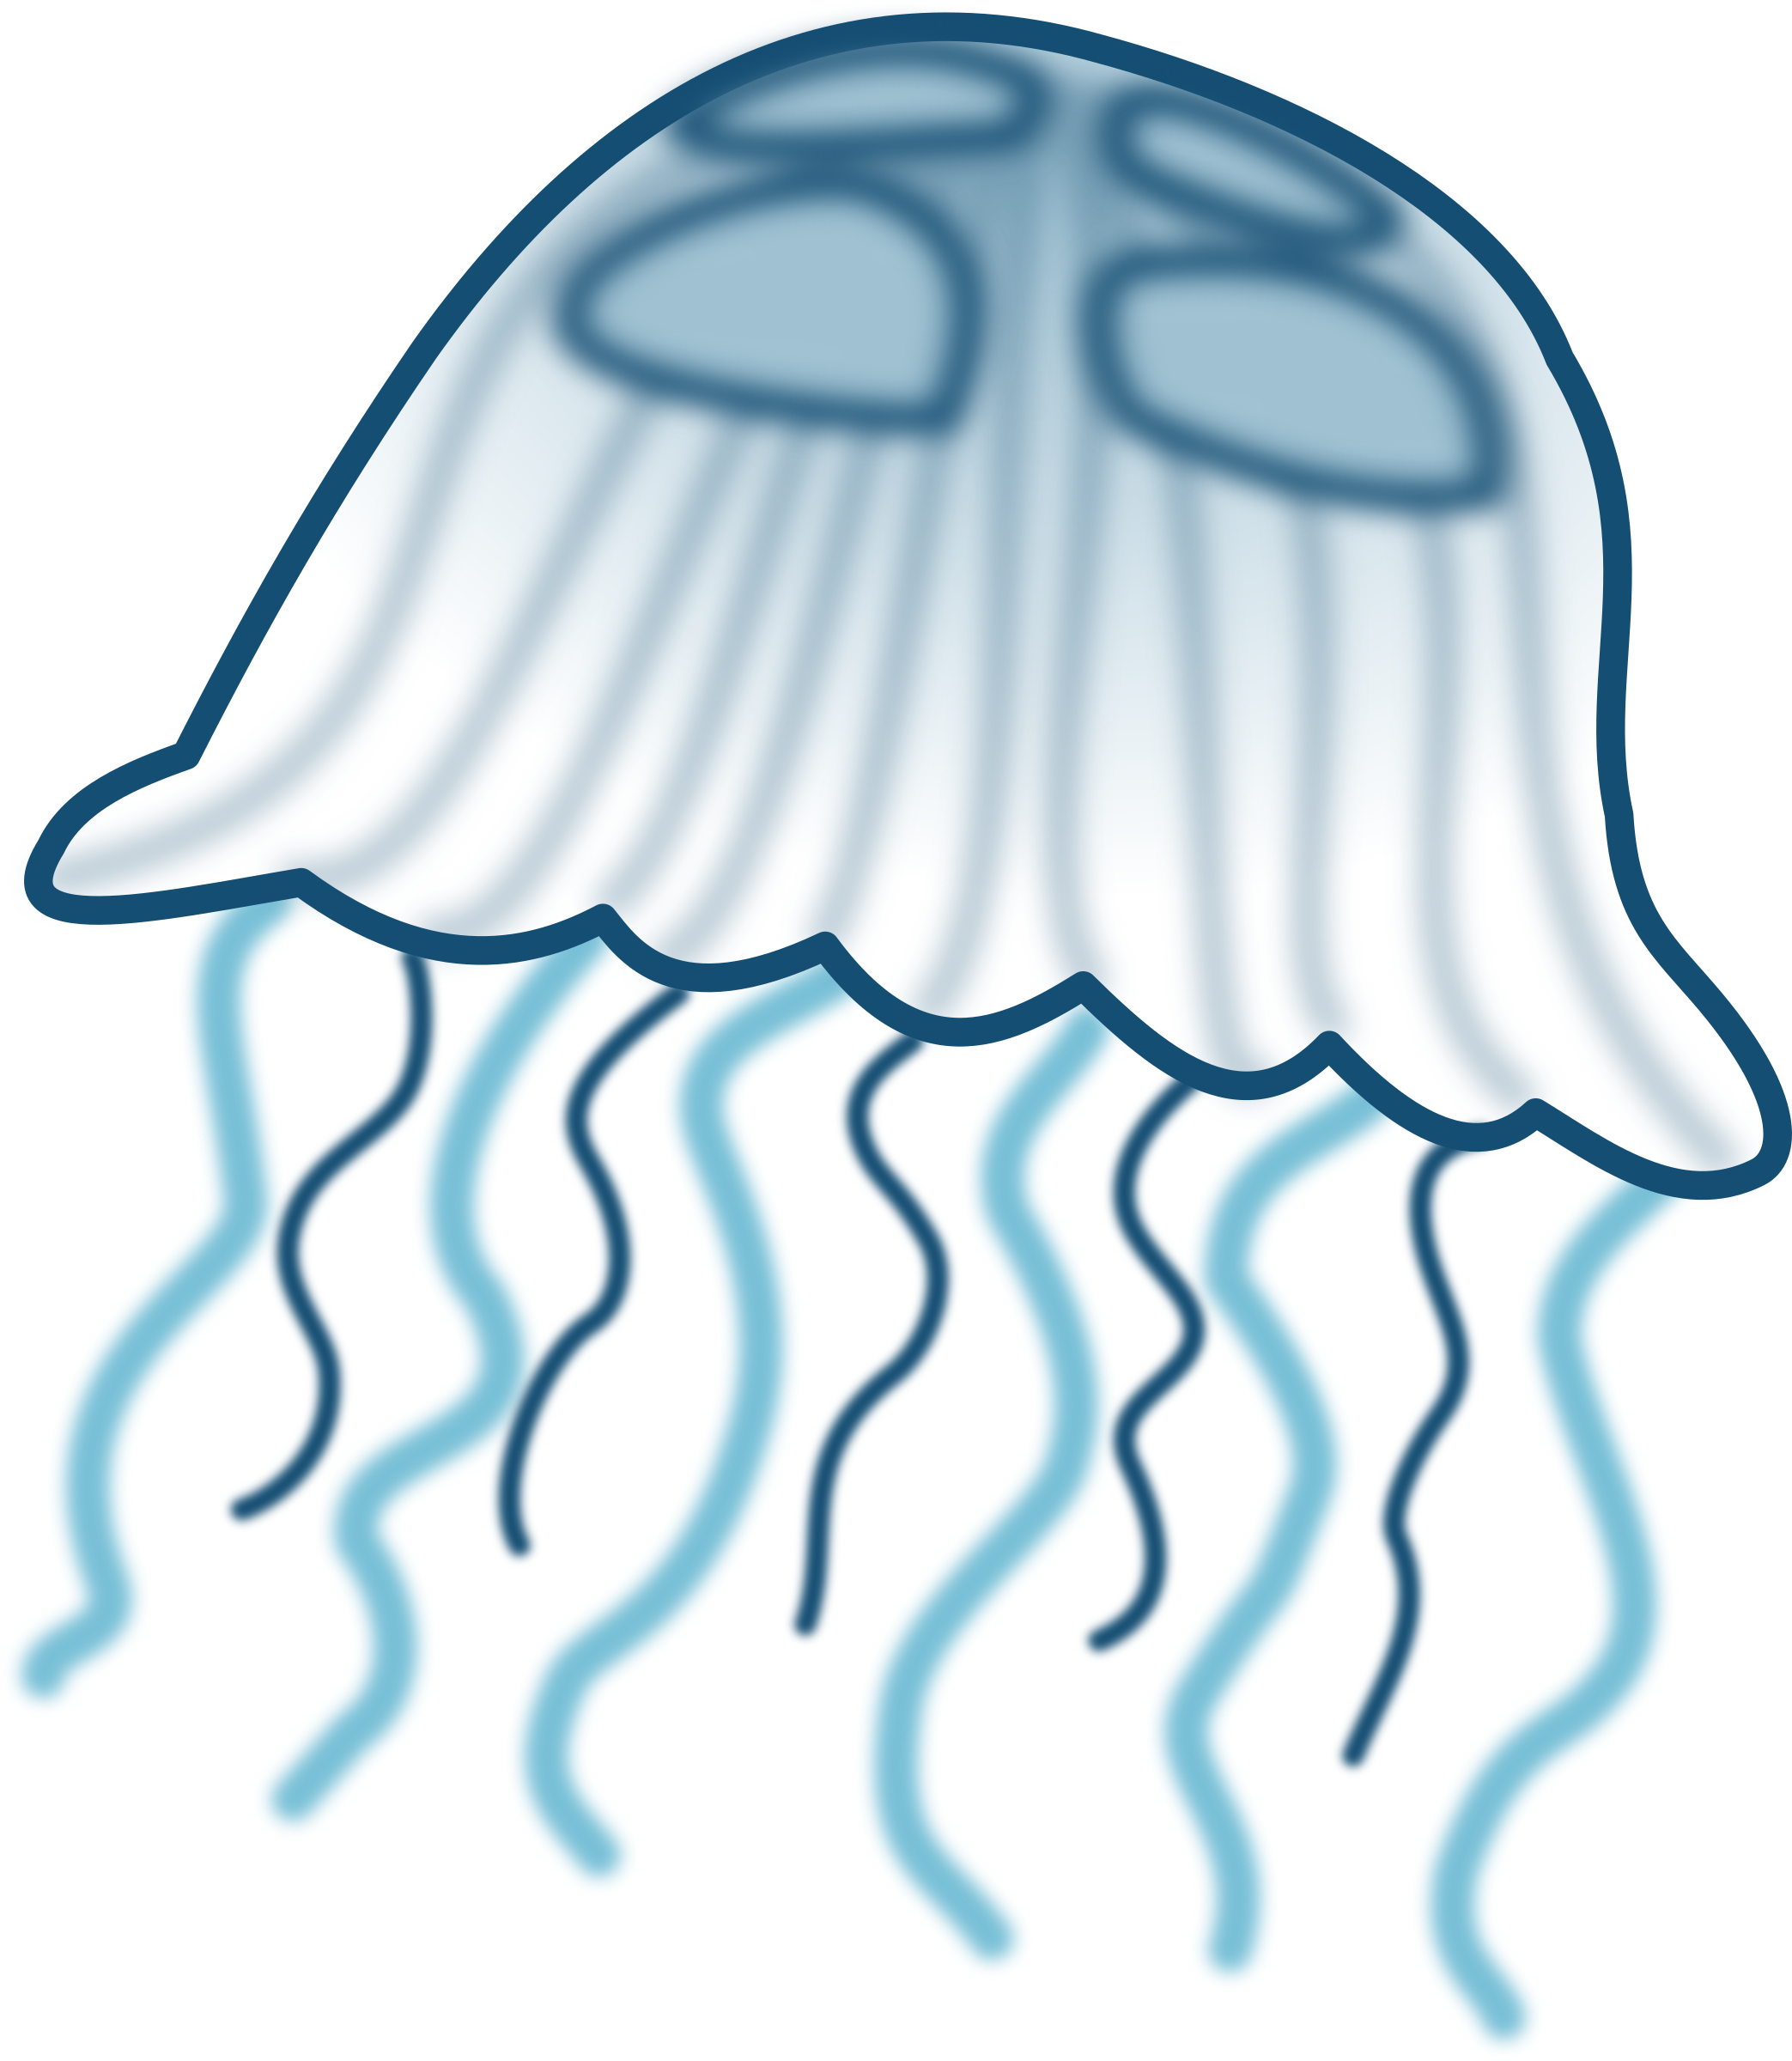 Big image png. Clipart ocean jellyfish